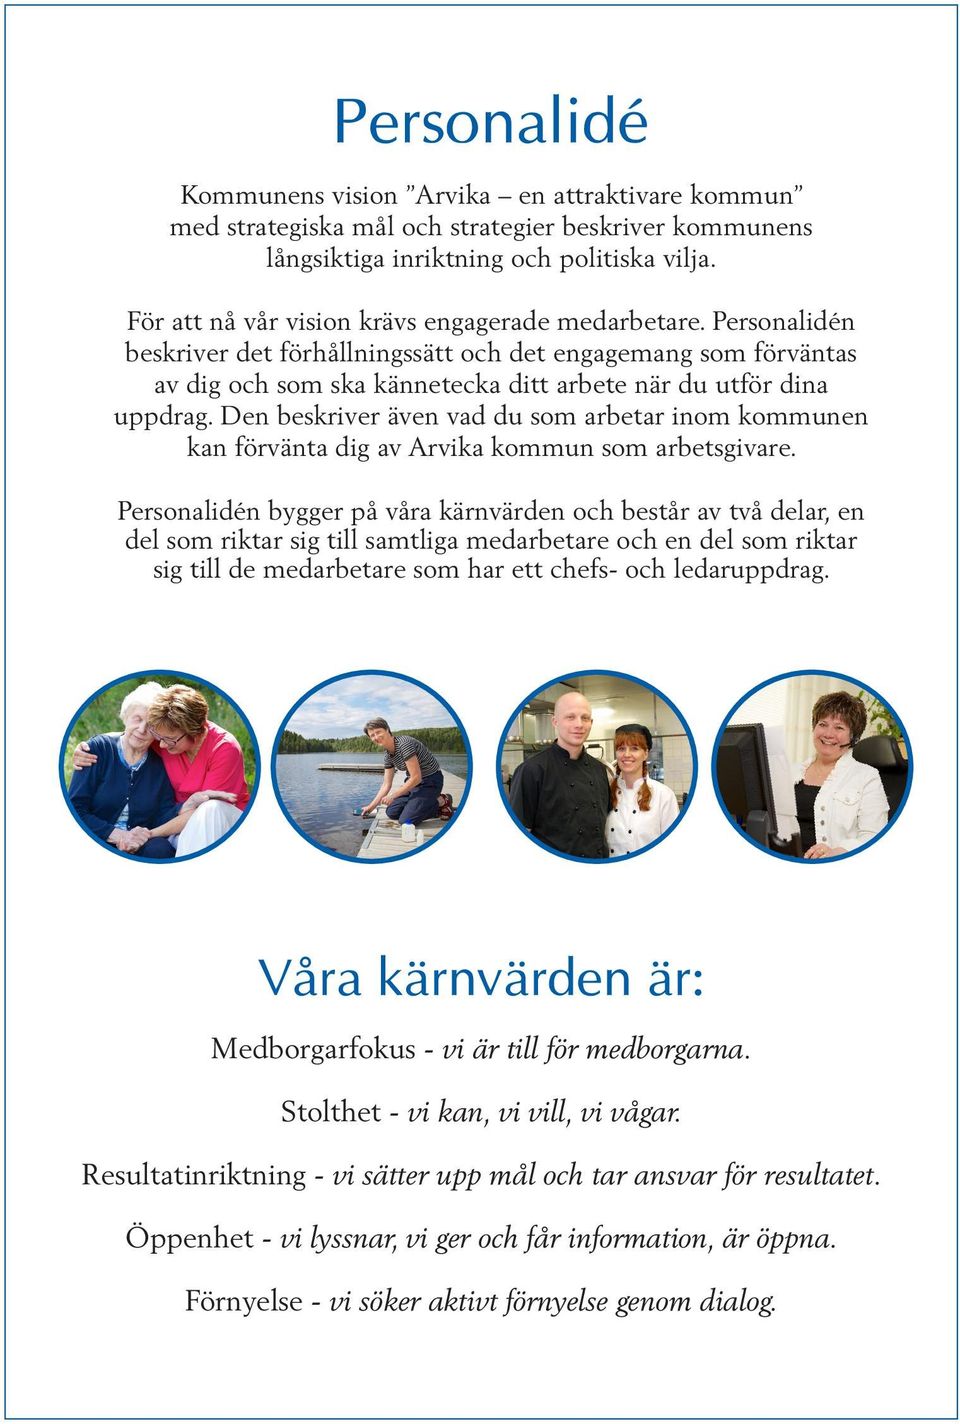 Den beskriver även vad du som arbetar inom kommunen kan förvänta dig av Arvika kommun som arbetsgivare.